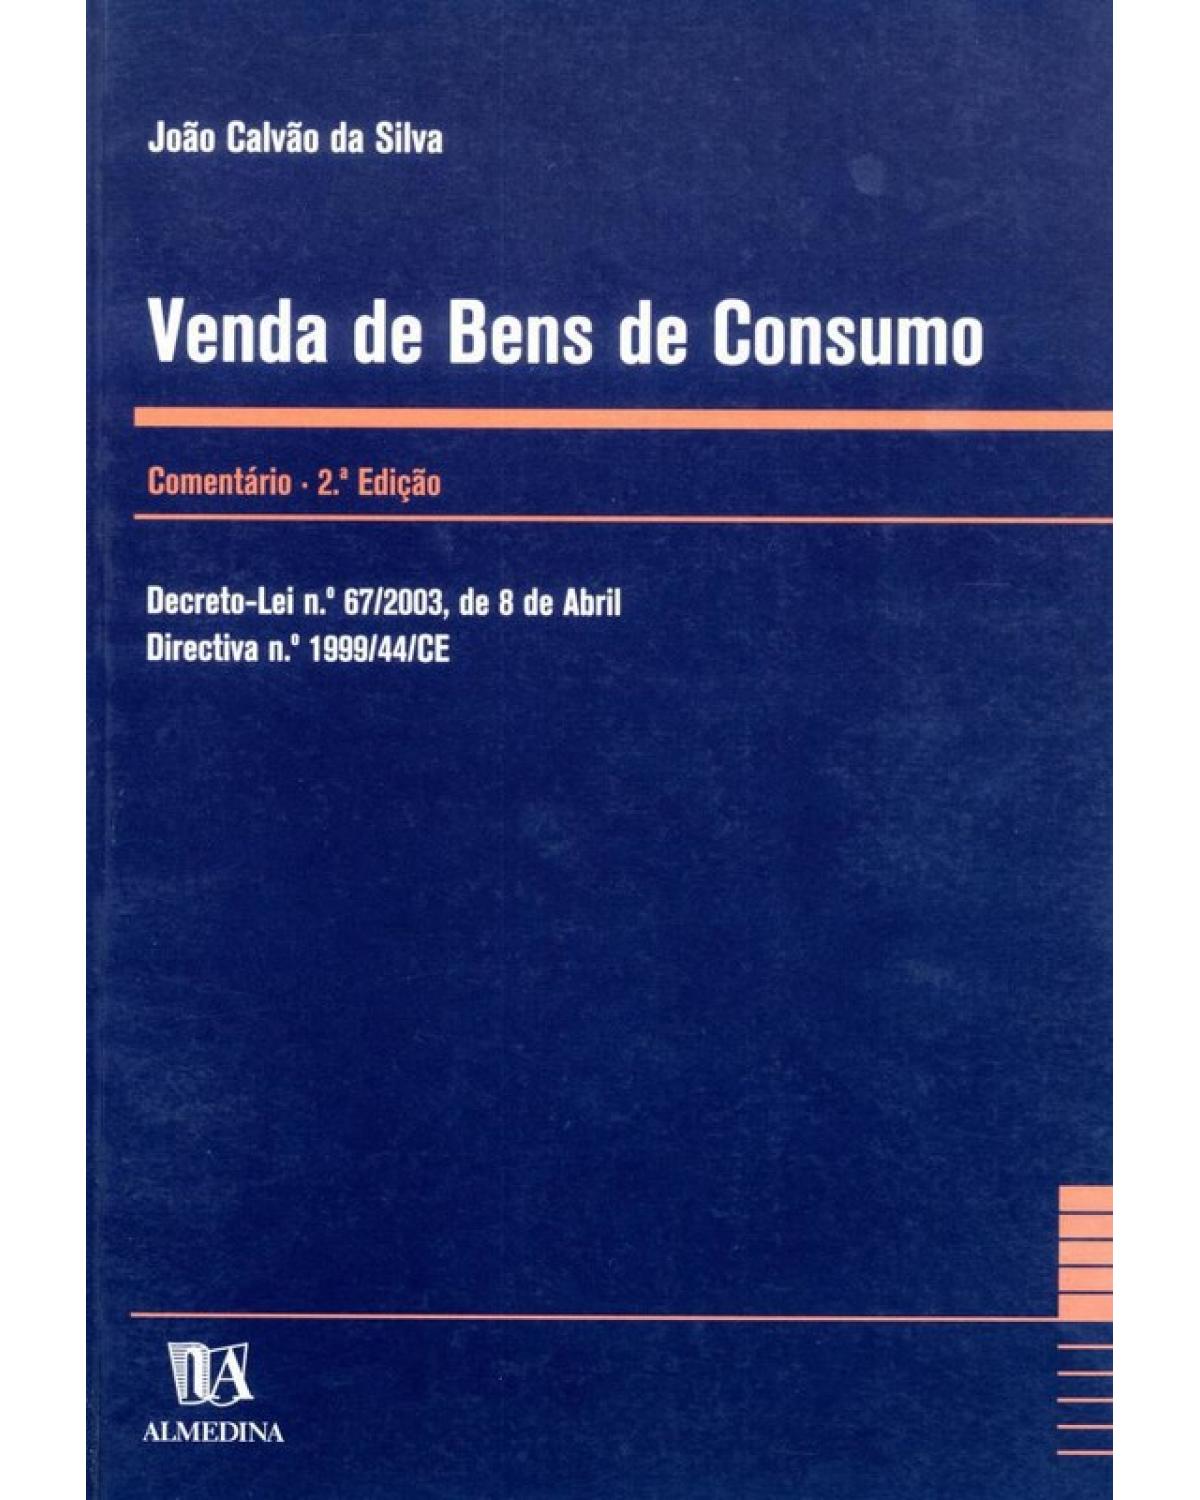 Venda de bens de consumo - comentário - 2ª Edição | 2003